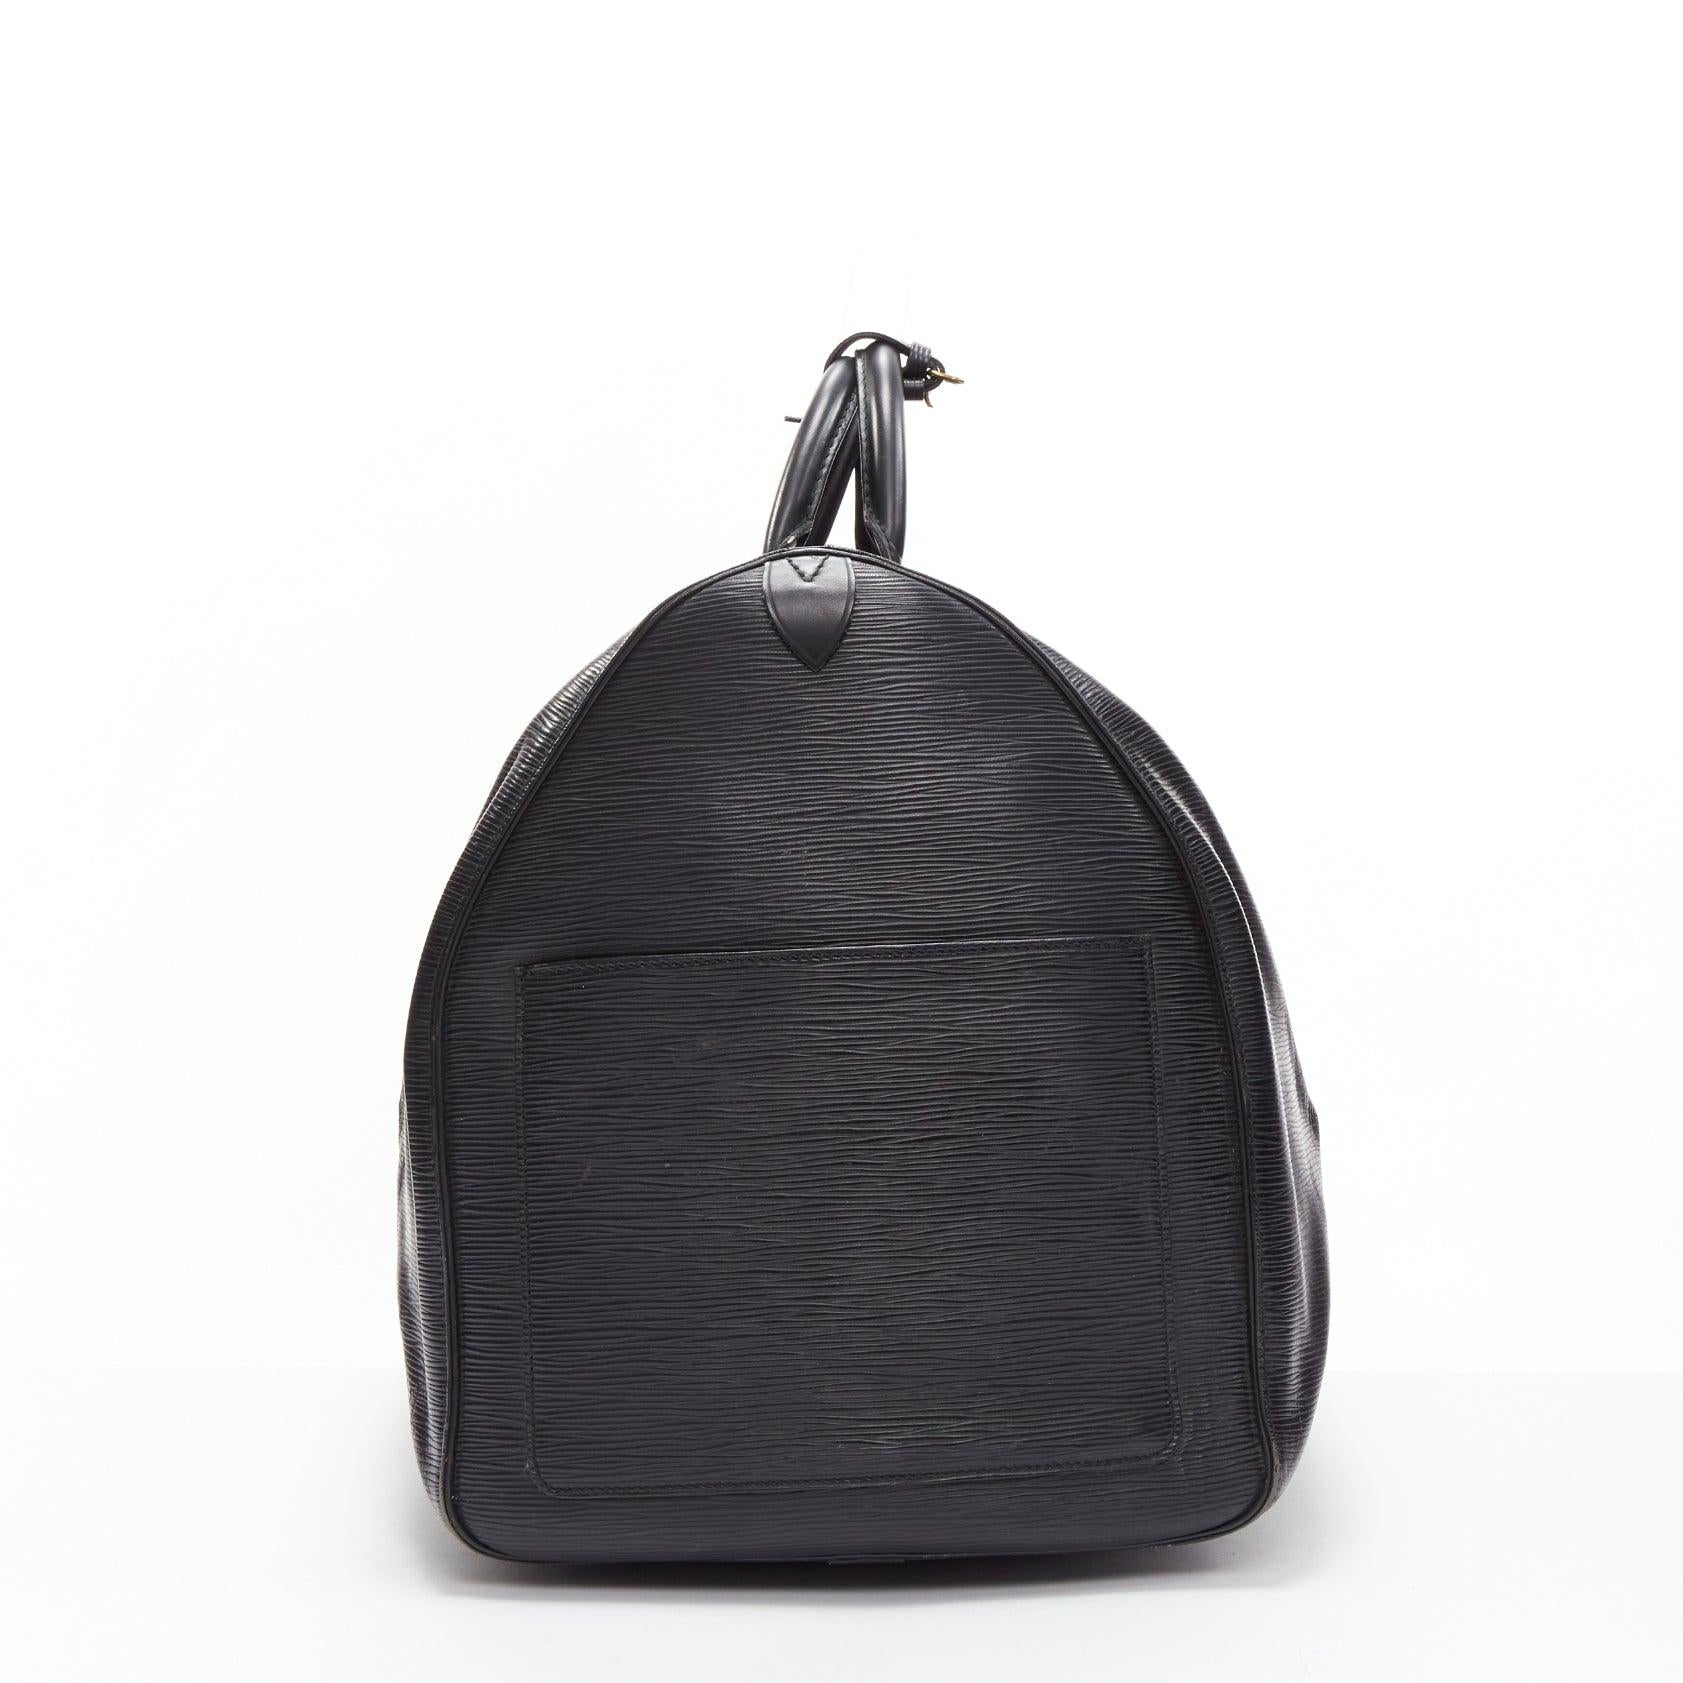 LOUIS VUITTON Keepall 55 cuir épi noir logo LV sac de voyage GHW Pour femmes en vente